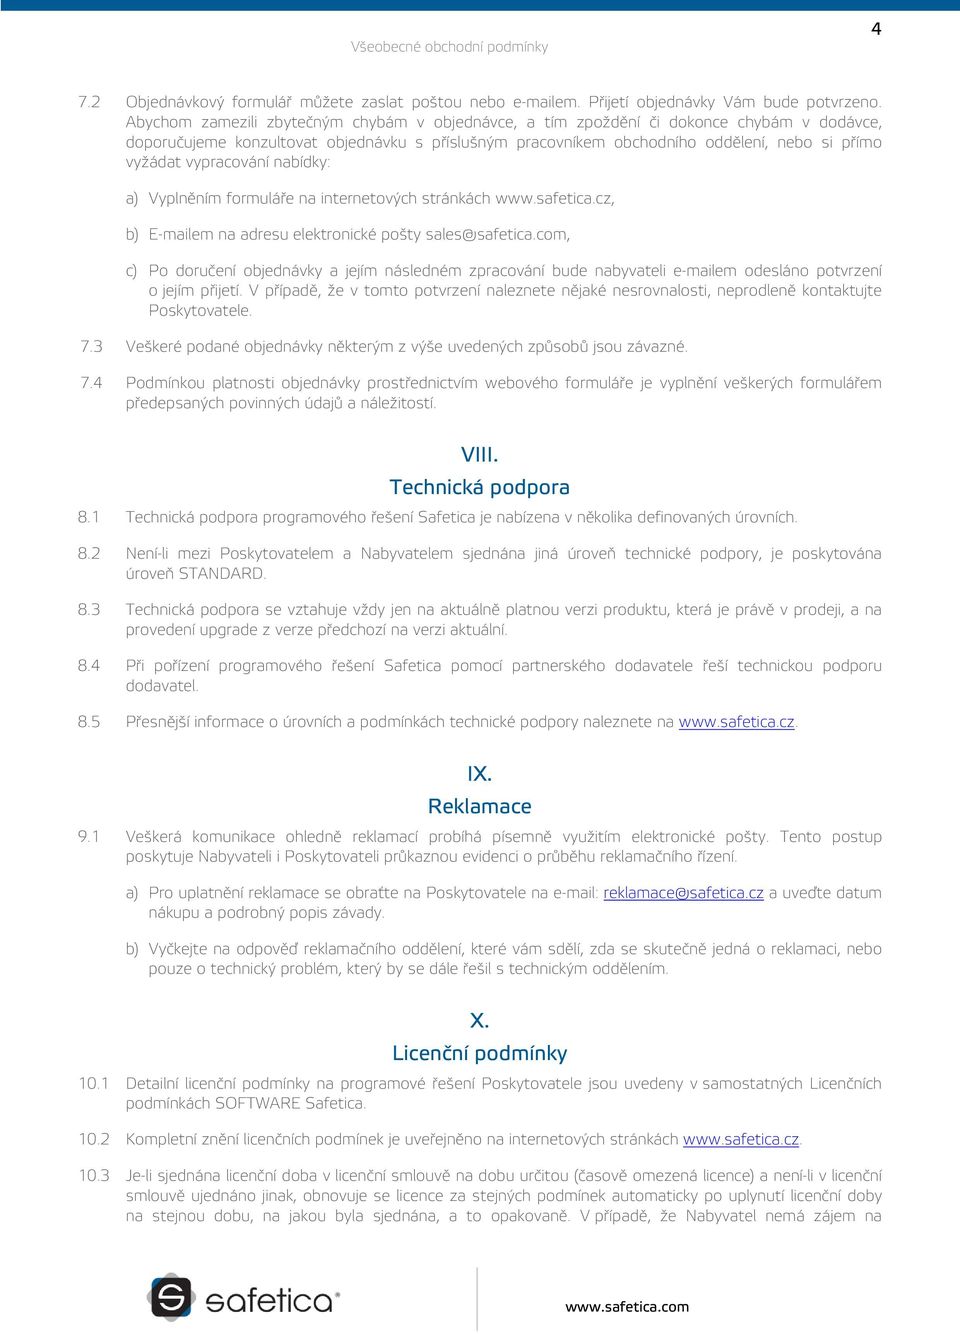 vypracování nabídky: a) Vyplněním formuláře na internetových stránkách www.safetica.cz, b) E-mailem na adresu elektronické pošty sales@safetica.